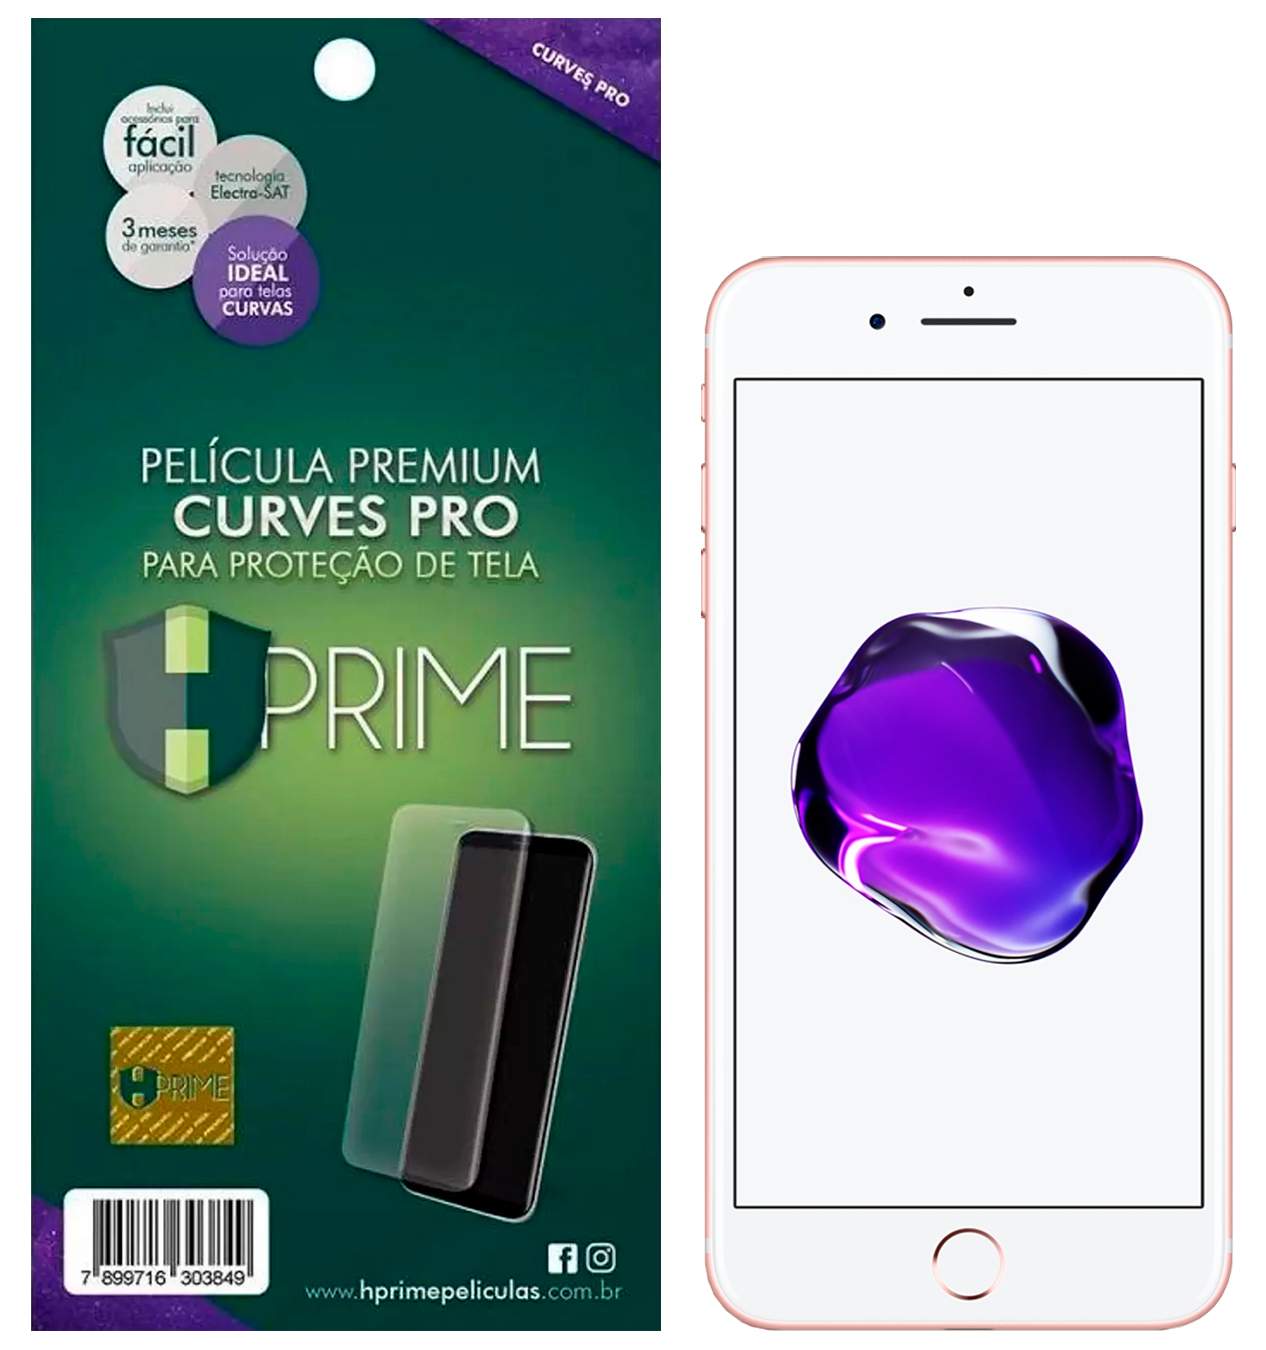 Pelicula Hprime Curves Pro para Apple iPhone 7 Plus / 8 Plus (Tela 5.5)